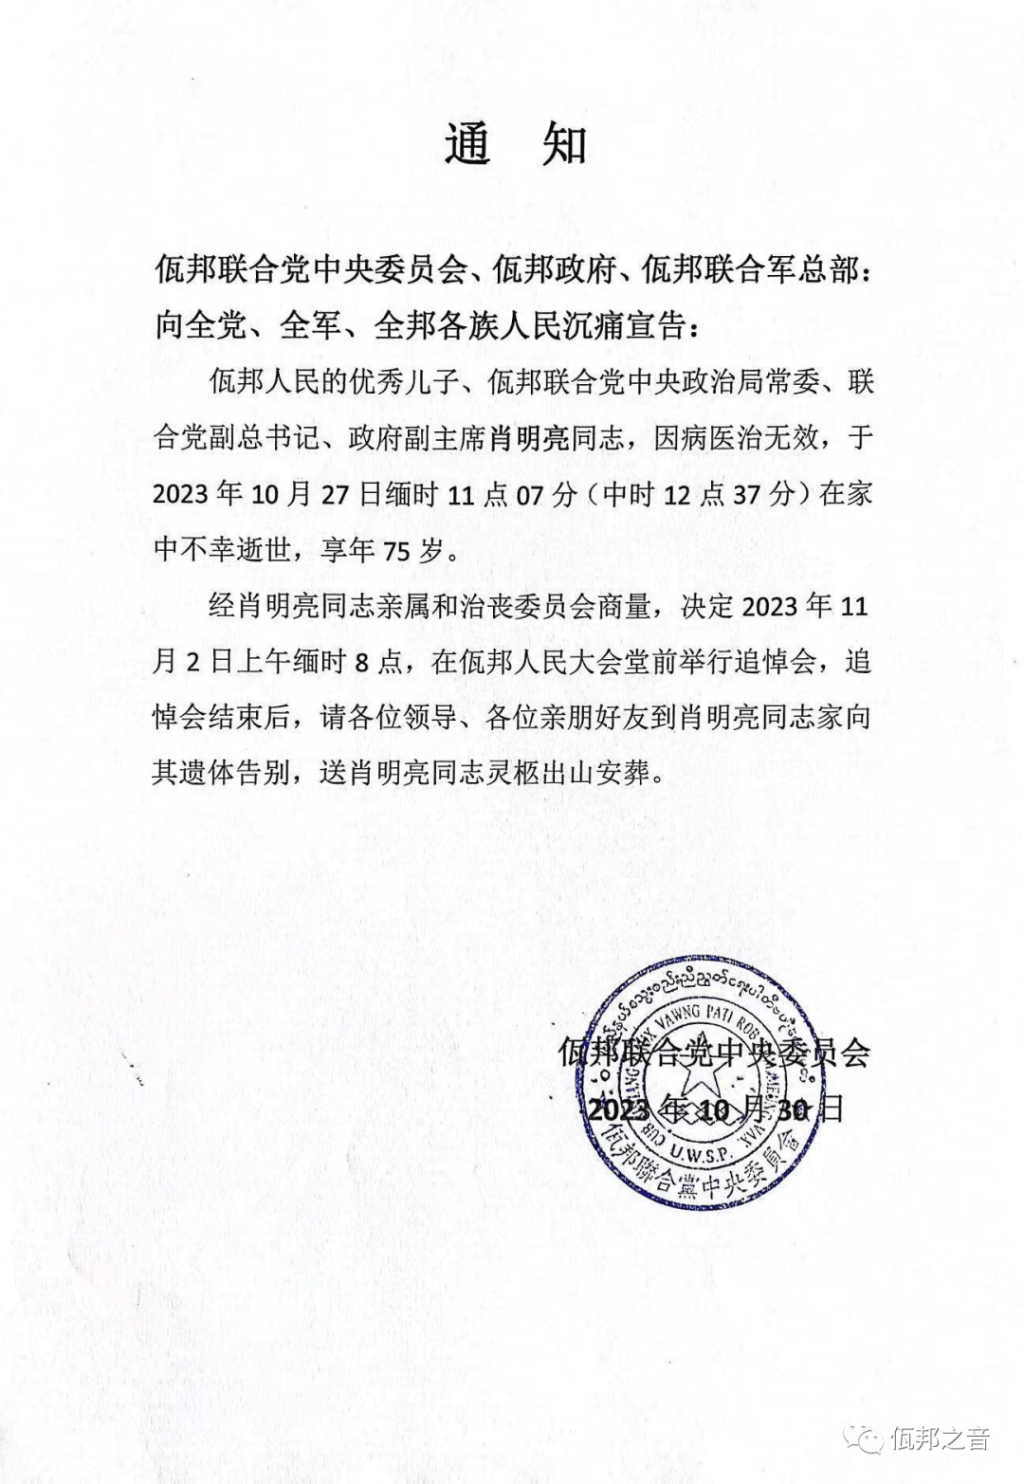 佤邦官方公佈肖明亮去世的消息。